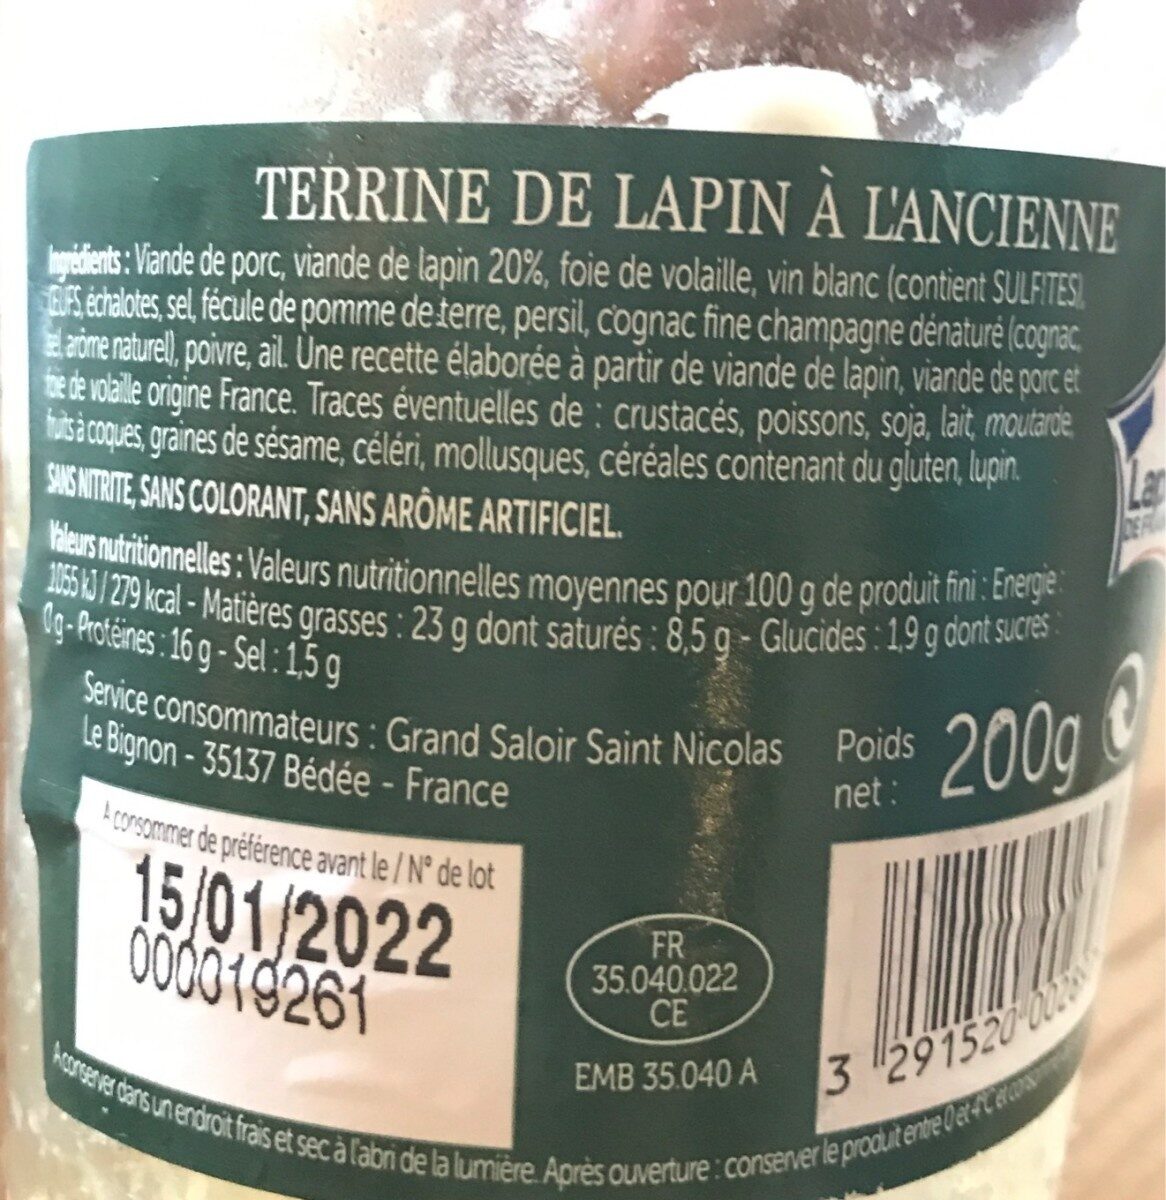 Terrine de Lapin à l'ancienne - Nutrition facts - fr